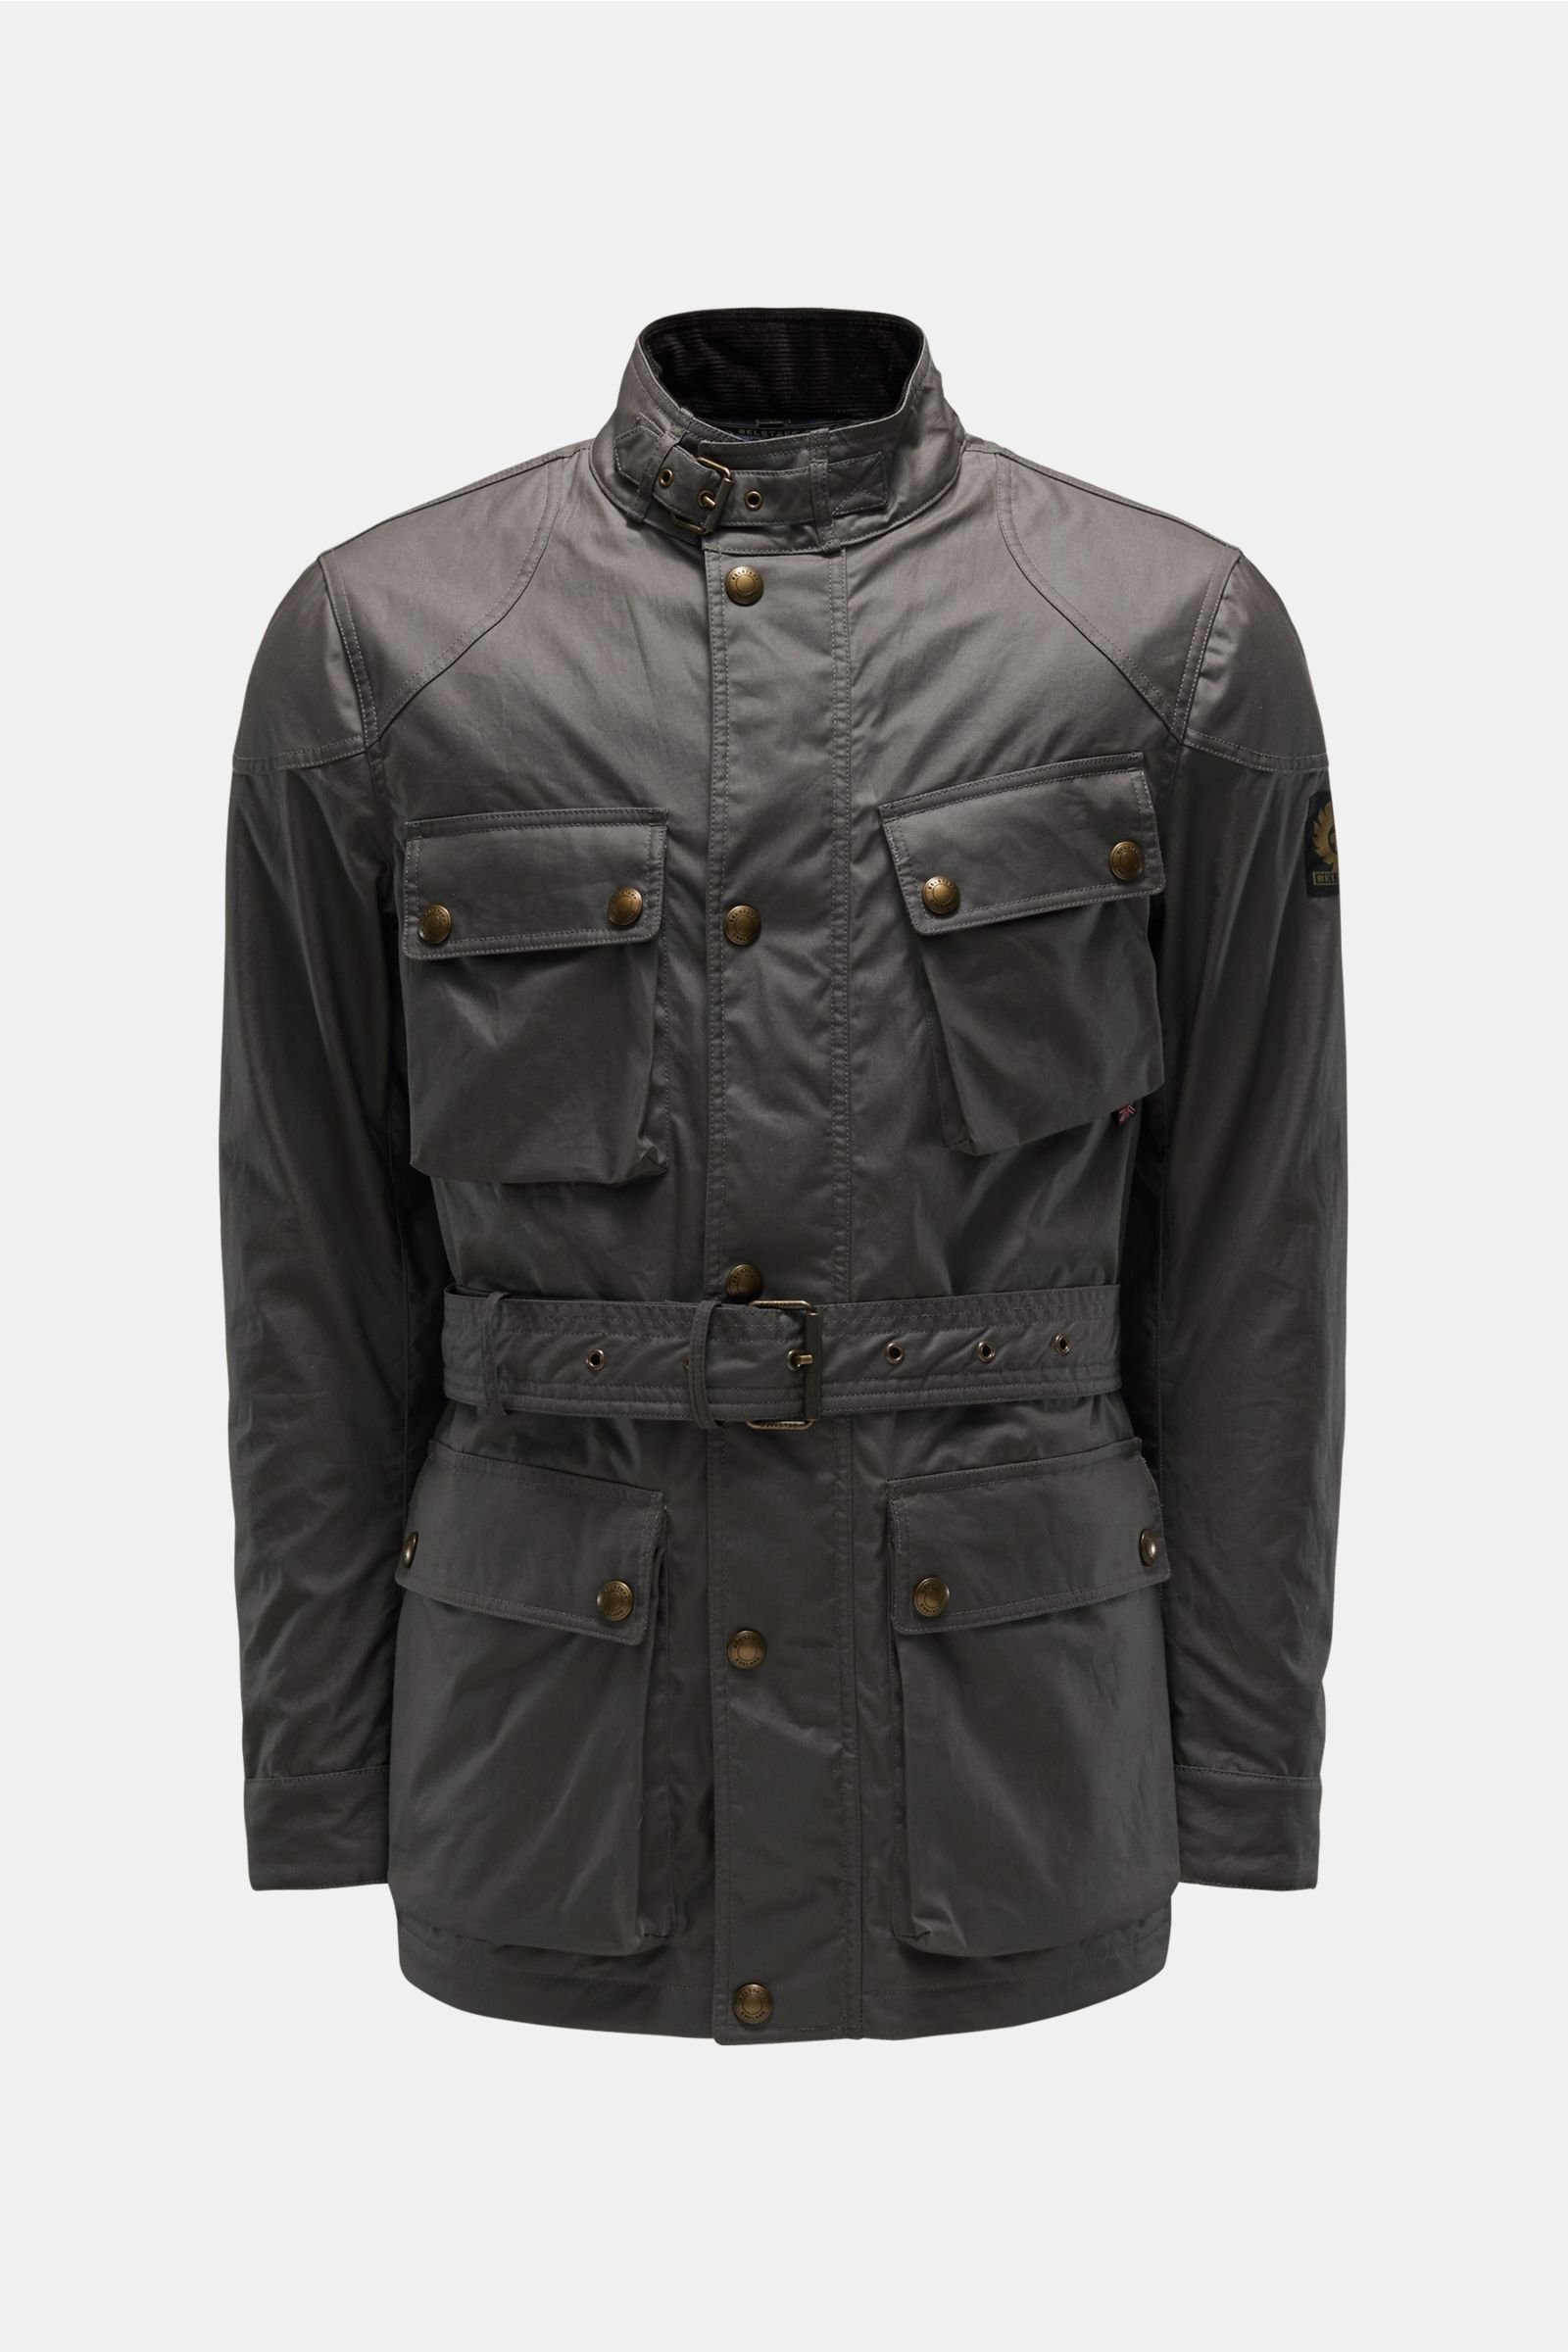 Waxed jacket 'Trialmaster' dark grey